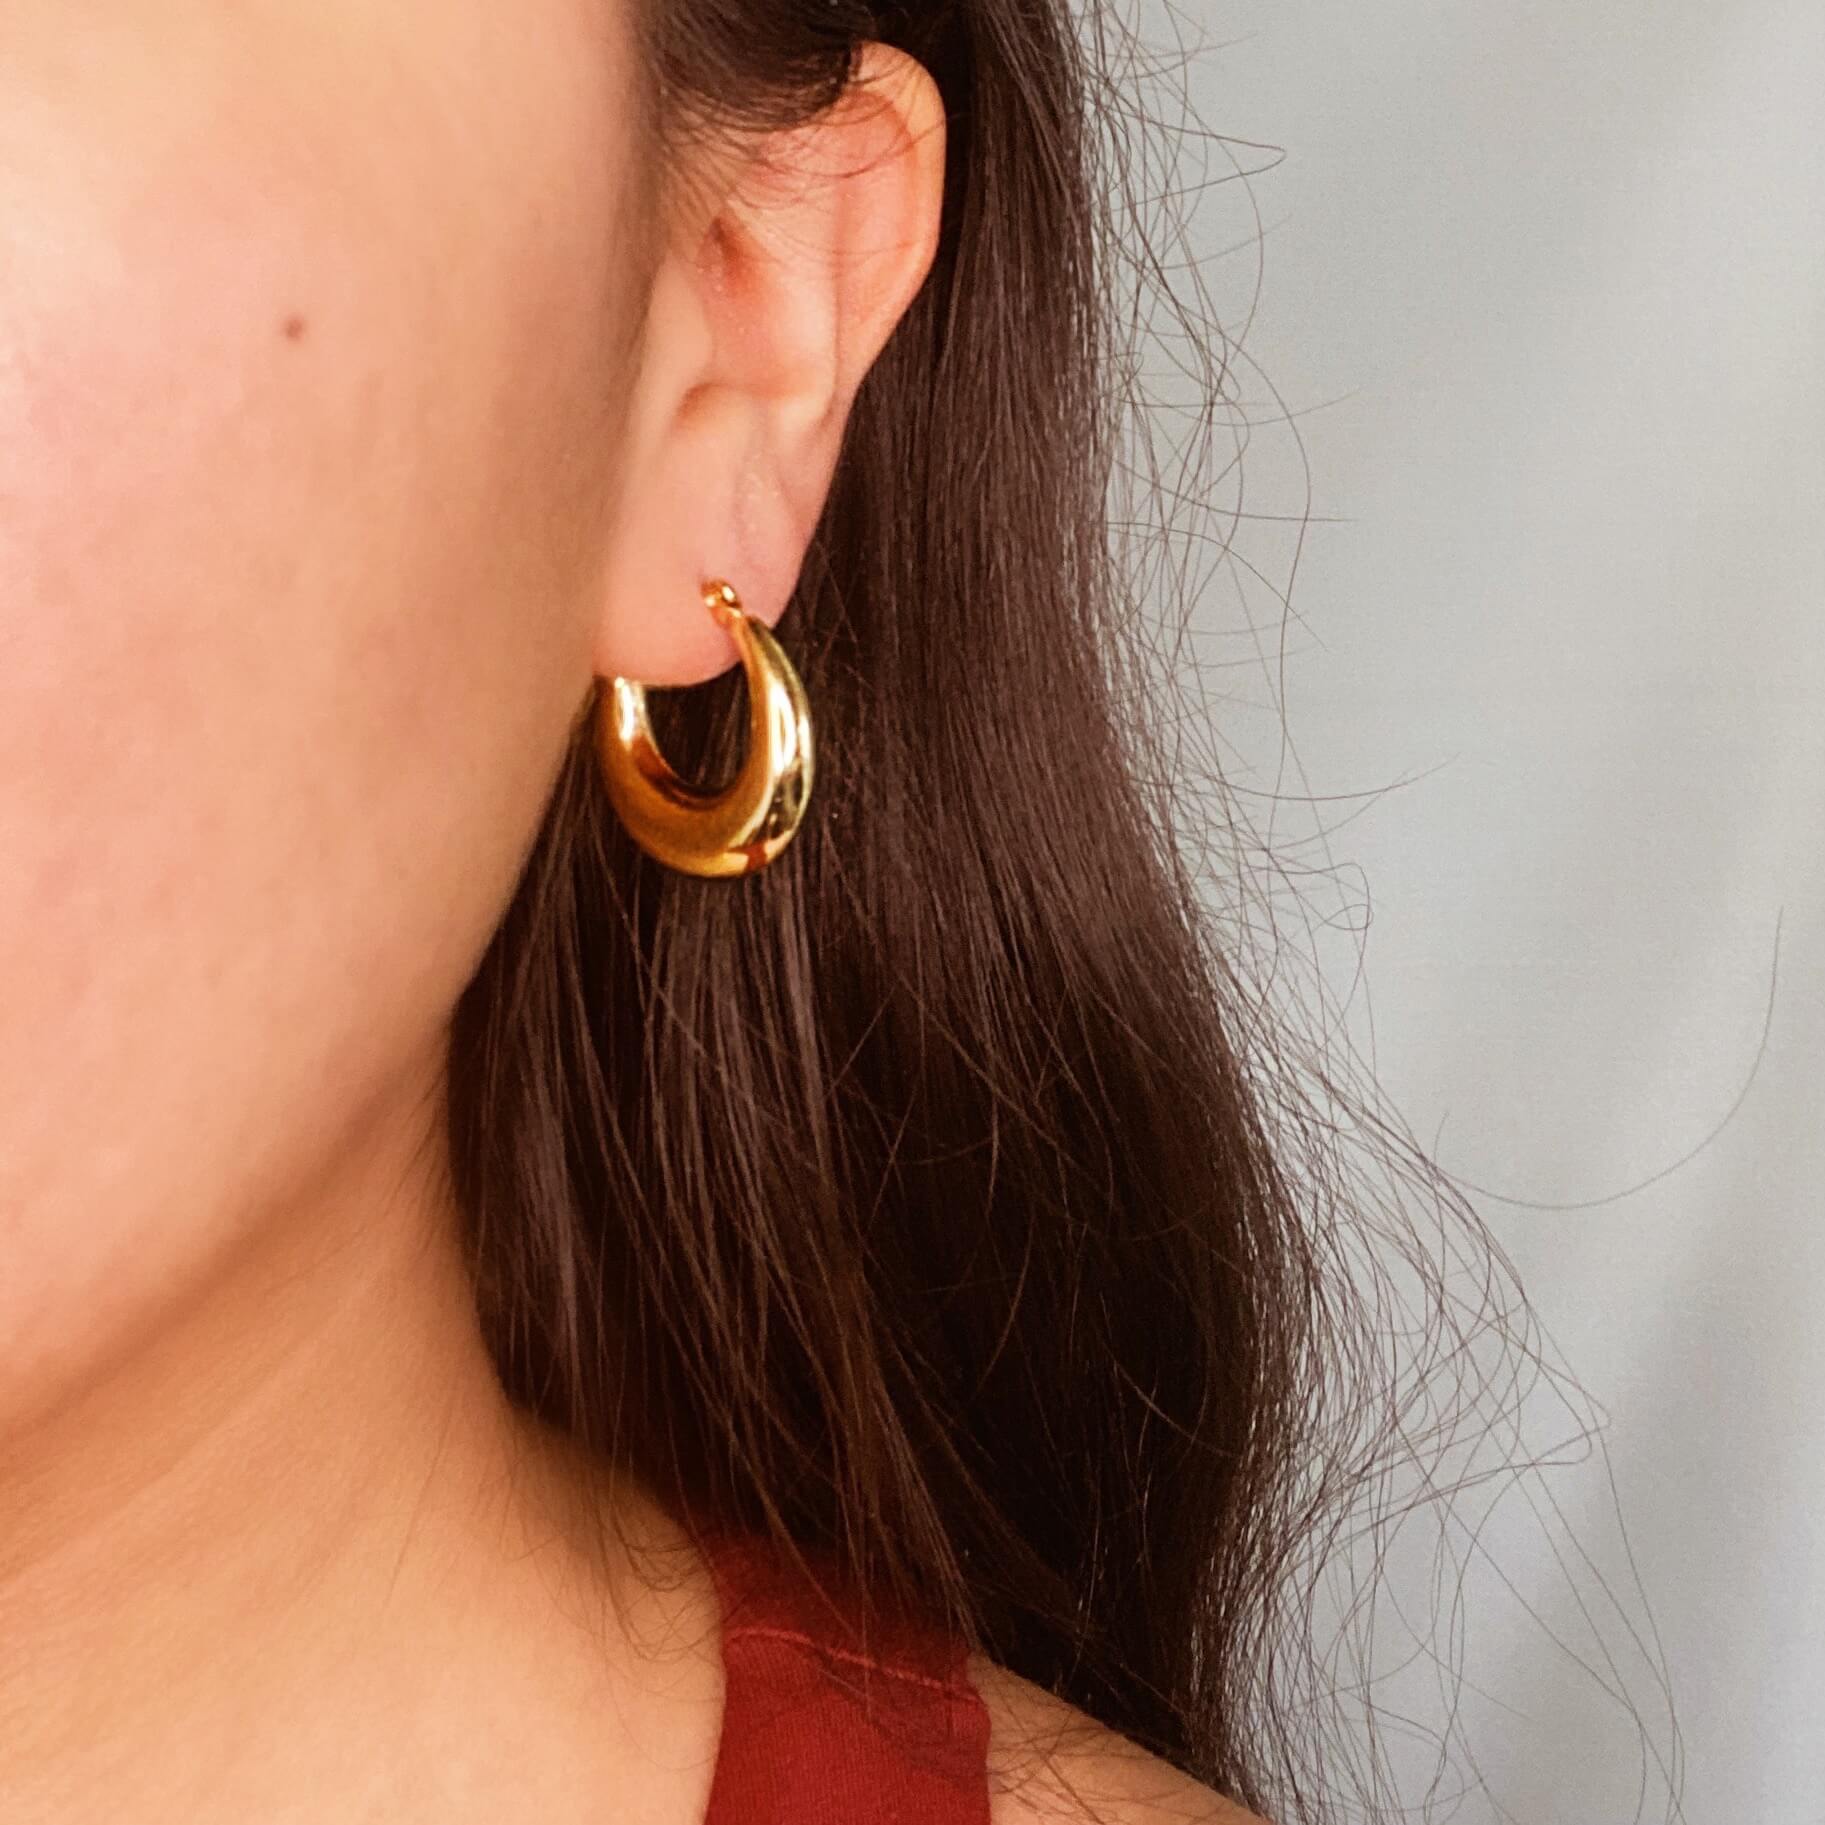 Las Reinas Hoop Earrings (Gold)